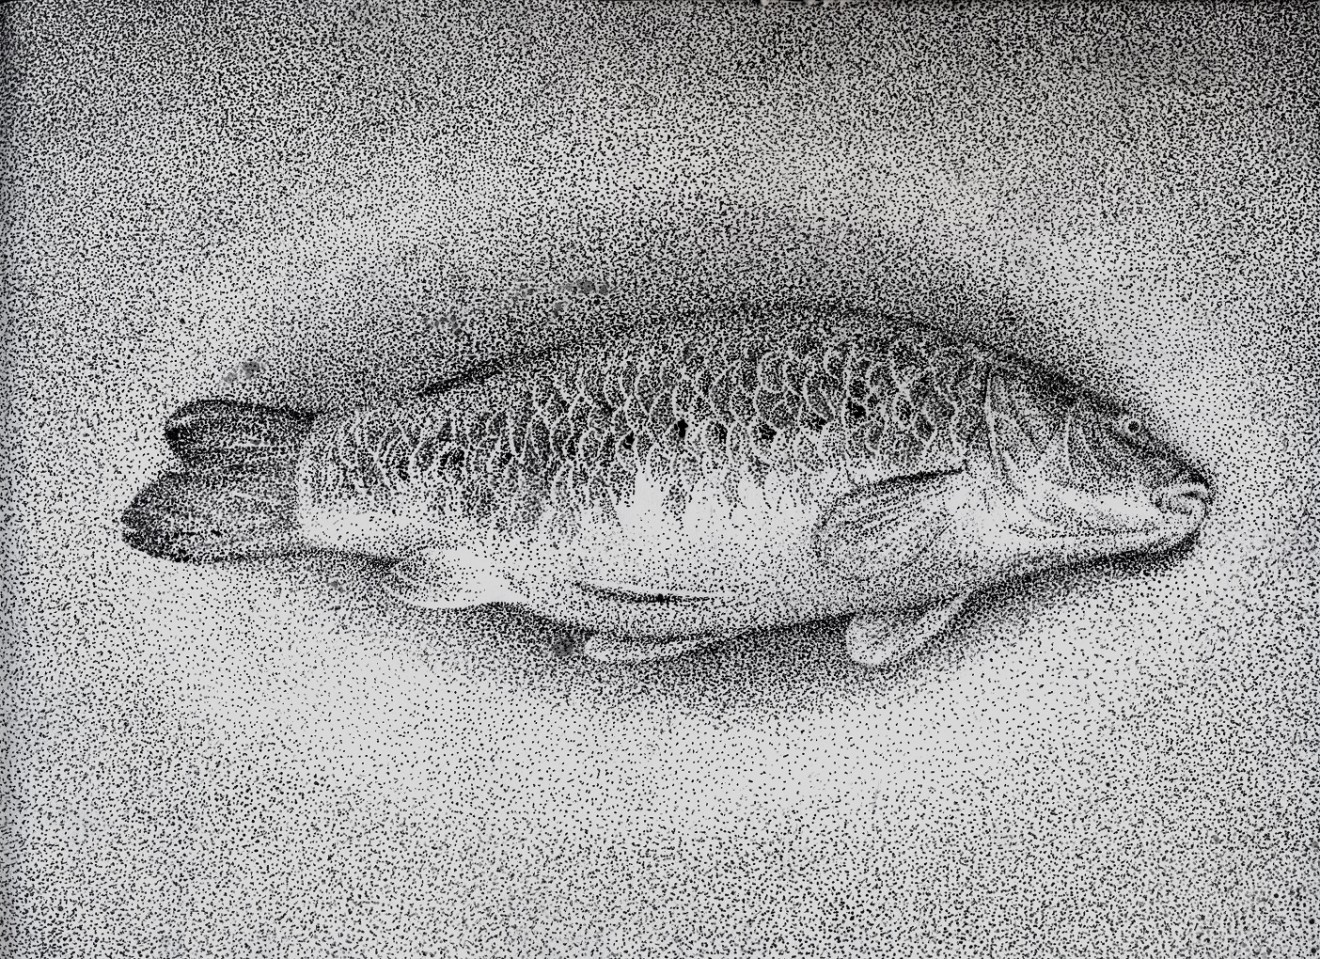 Mirmohamad Fatahi, Dead Fish, 2020